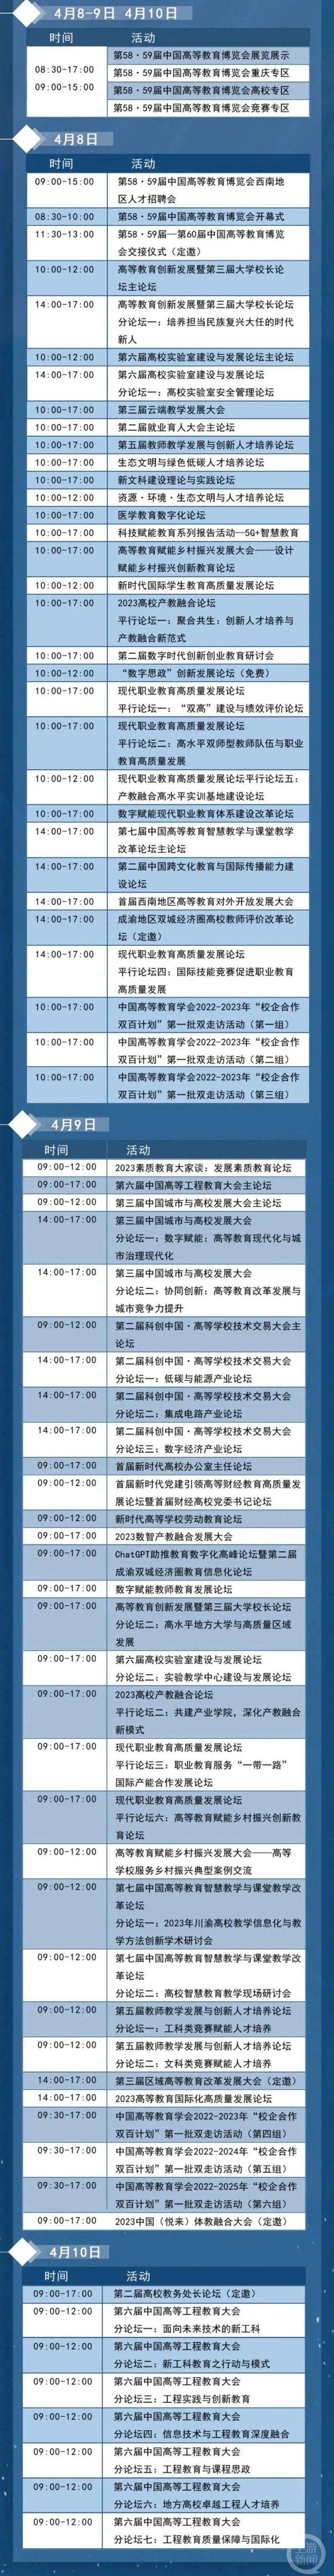 中国高等教育博览会明日在渝开幕 1500余所高校万余家企业将亮相